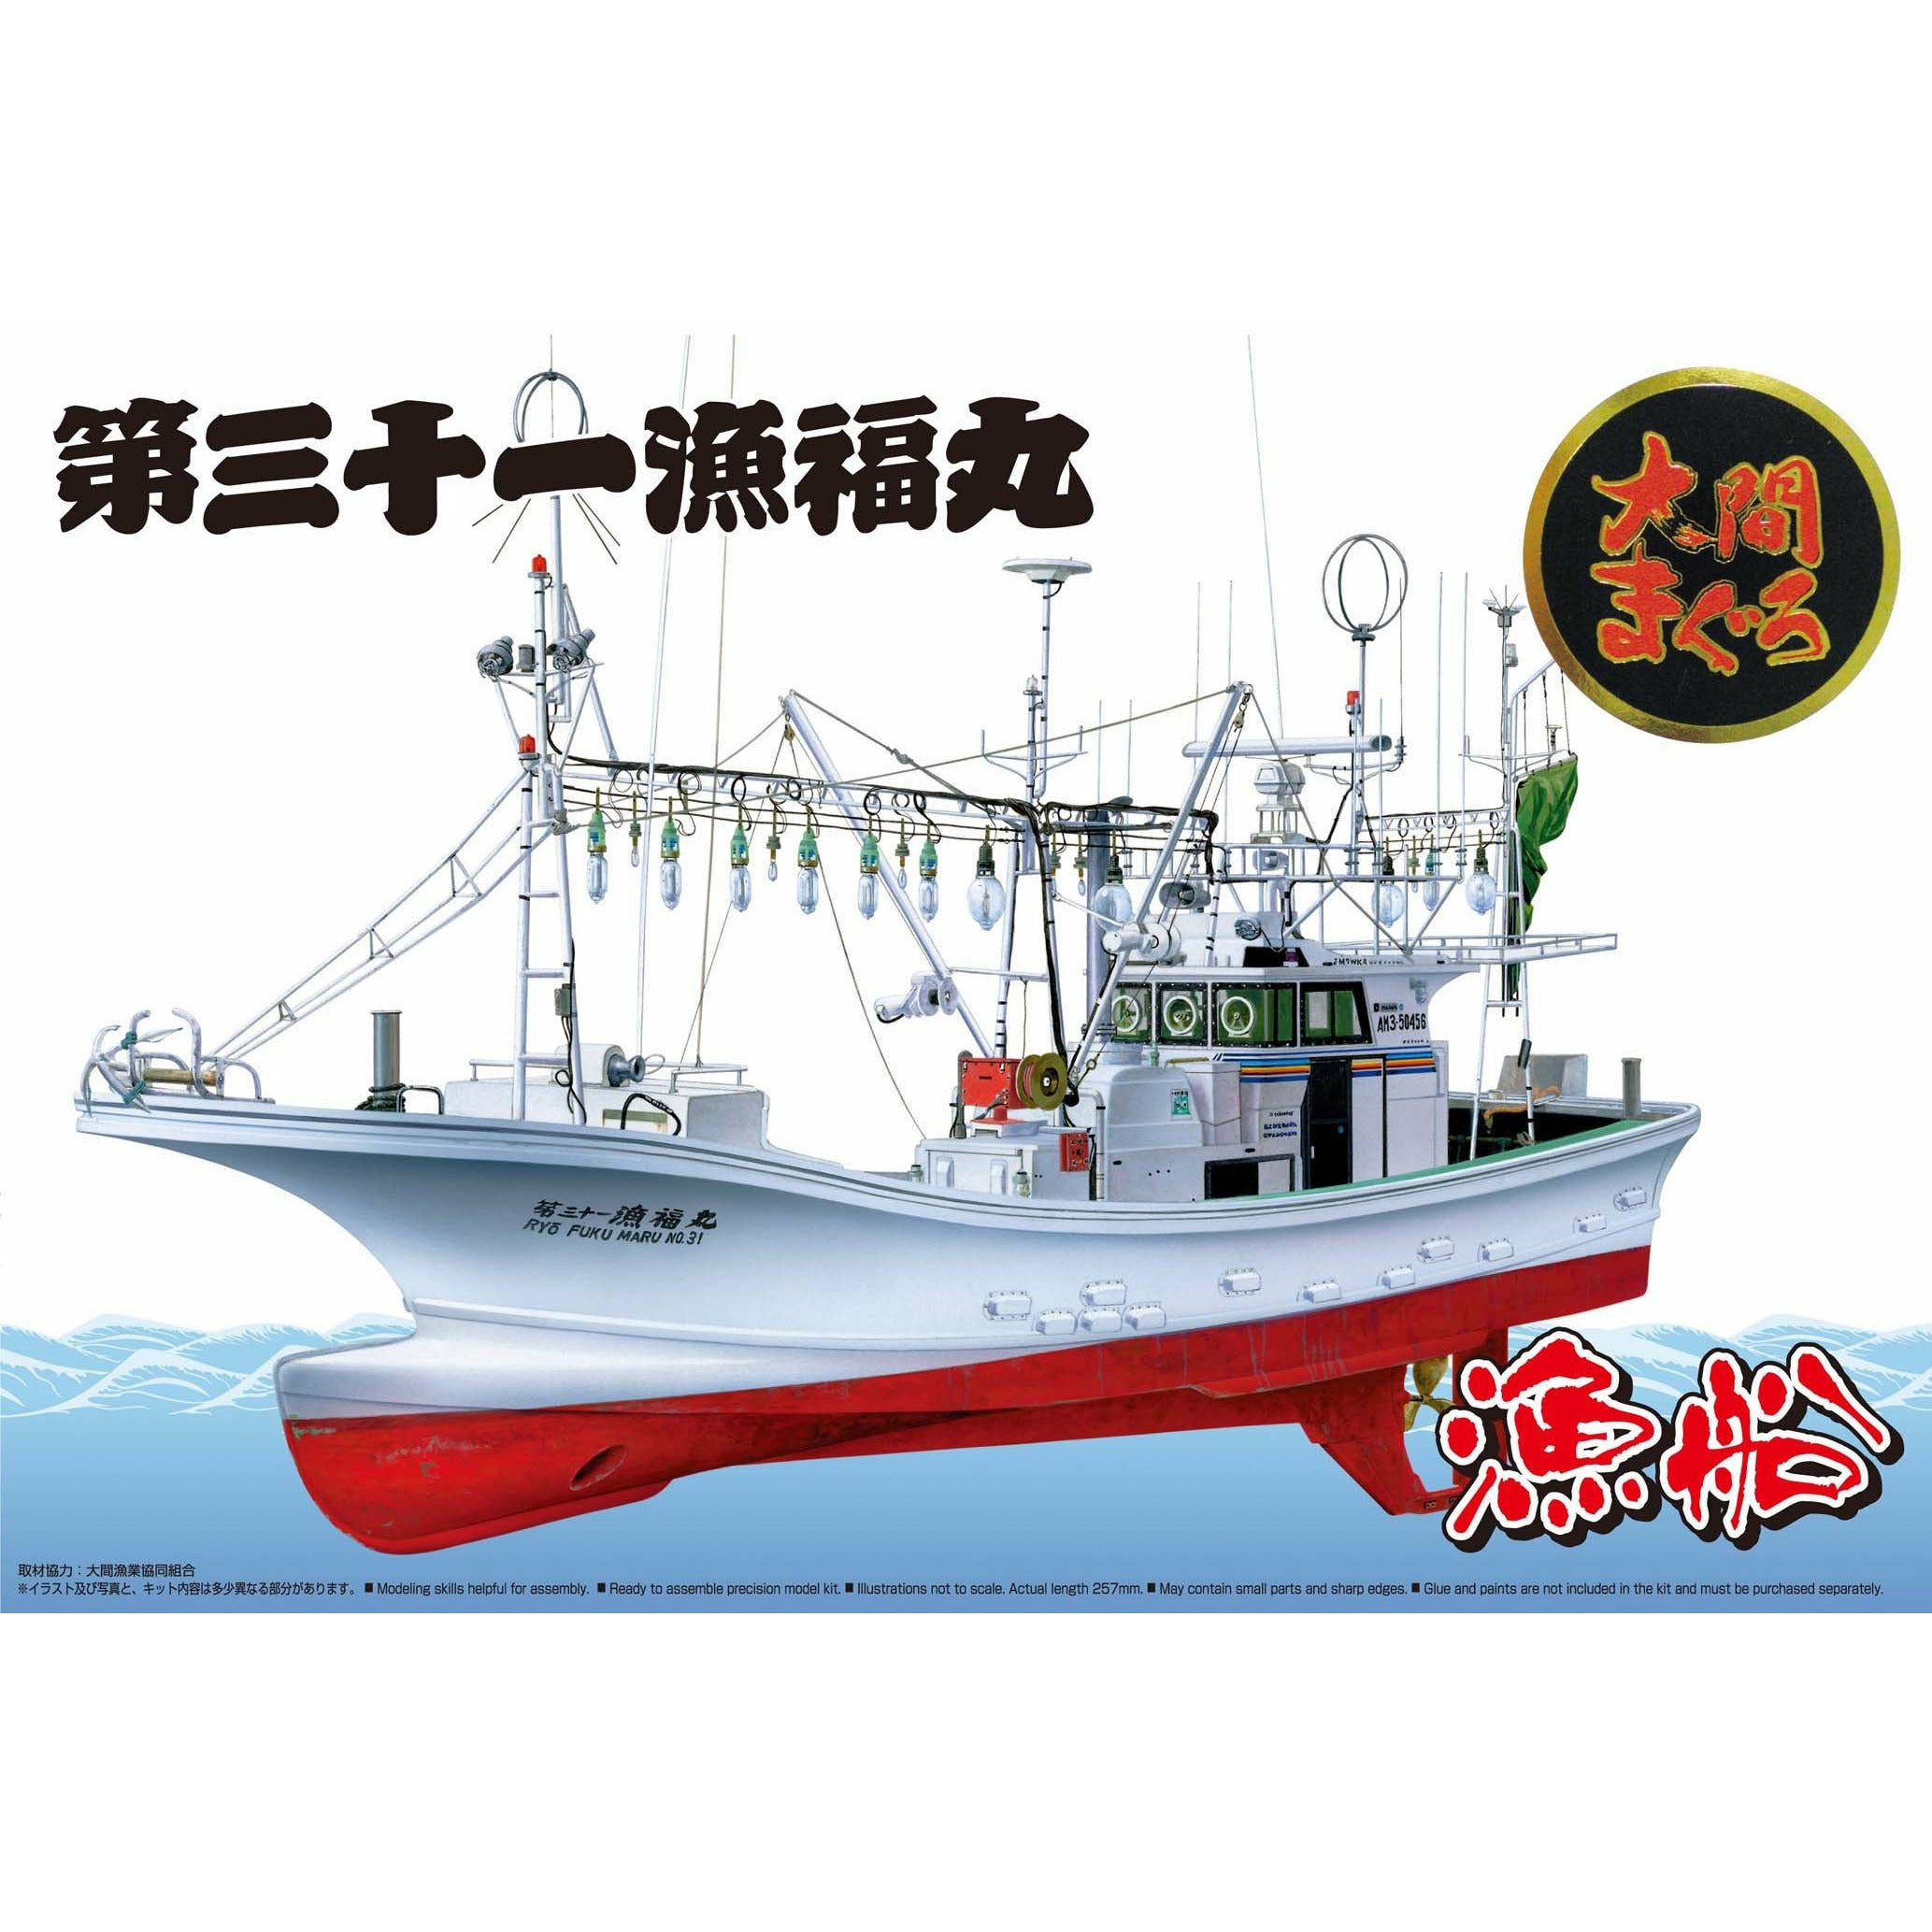 Ooma's Tuna Fishing Boat Ryoufuku-Maru No.31 Full Hull Model 1/64 Model Ship Kit #04993 by Aoshima